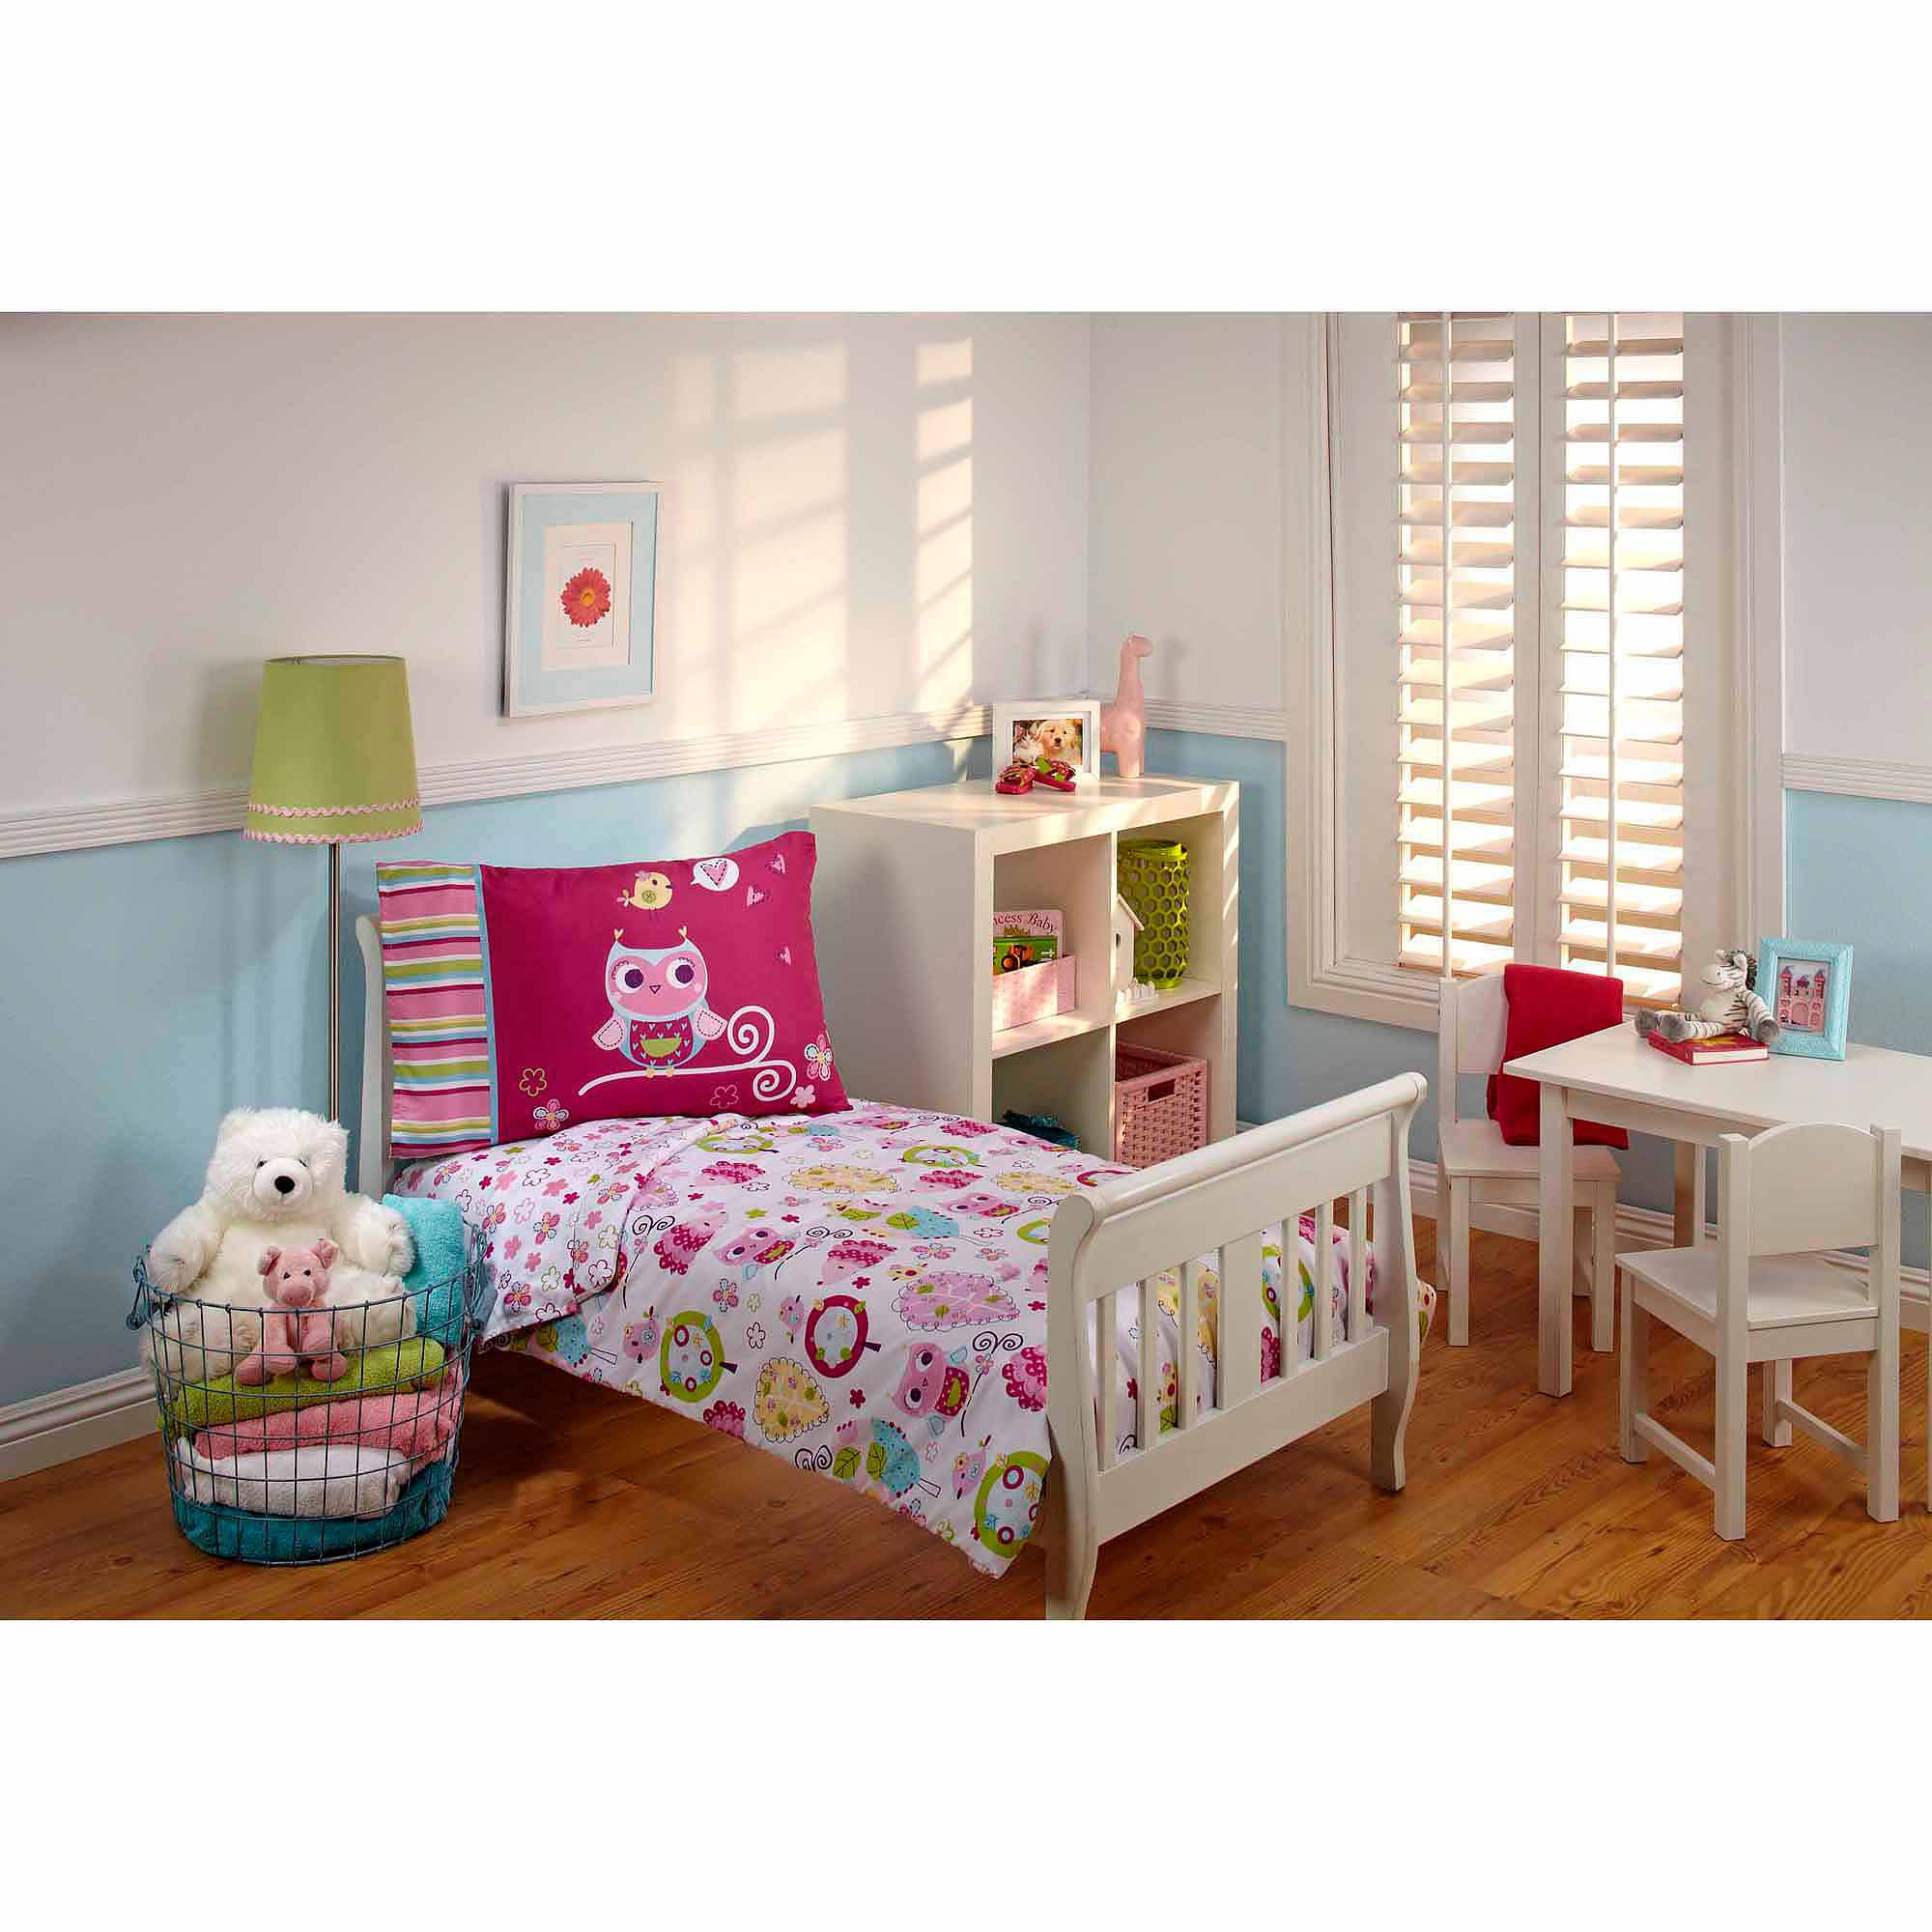 Walmart Girl Bedroom Sets
 Girls Toddler Bedding Sets Walmart